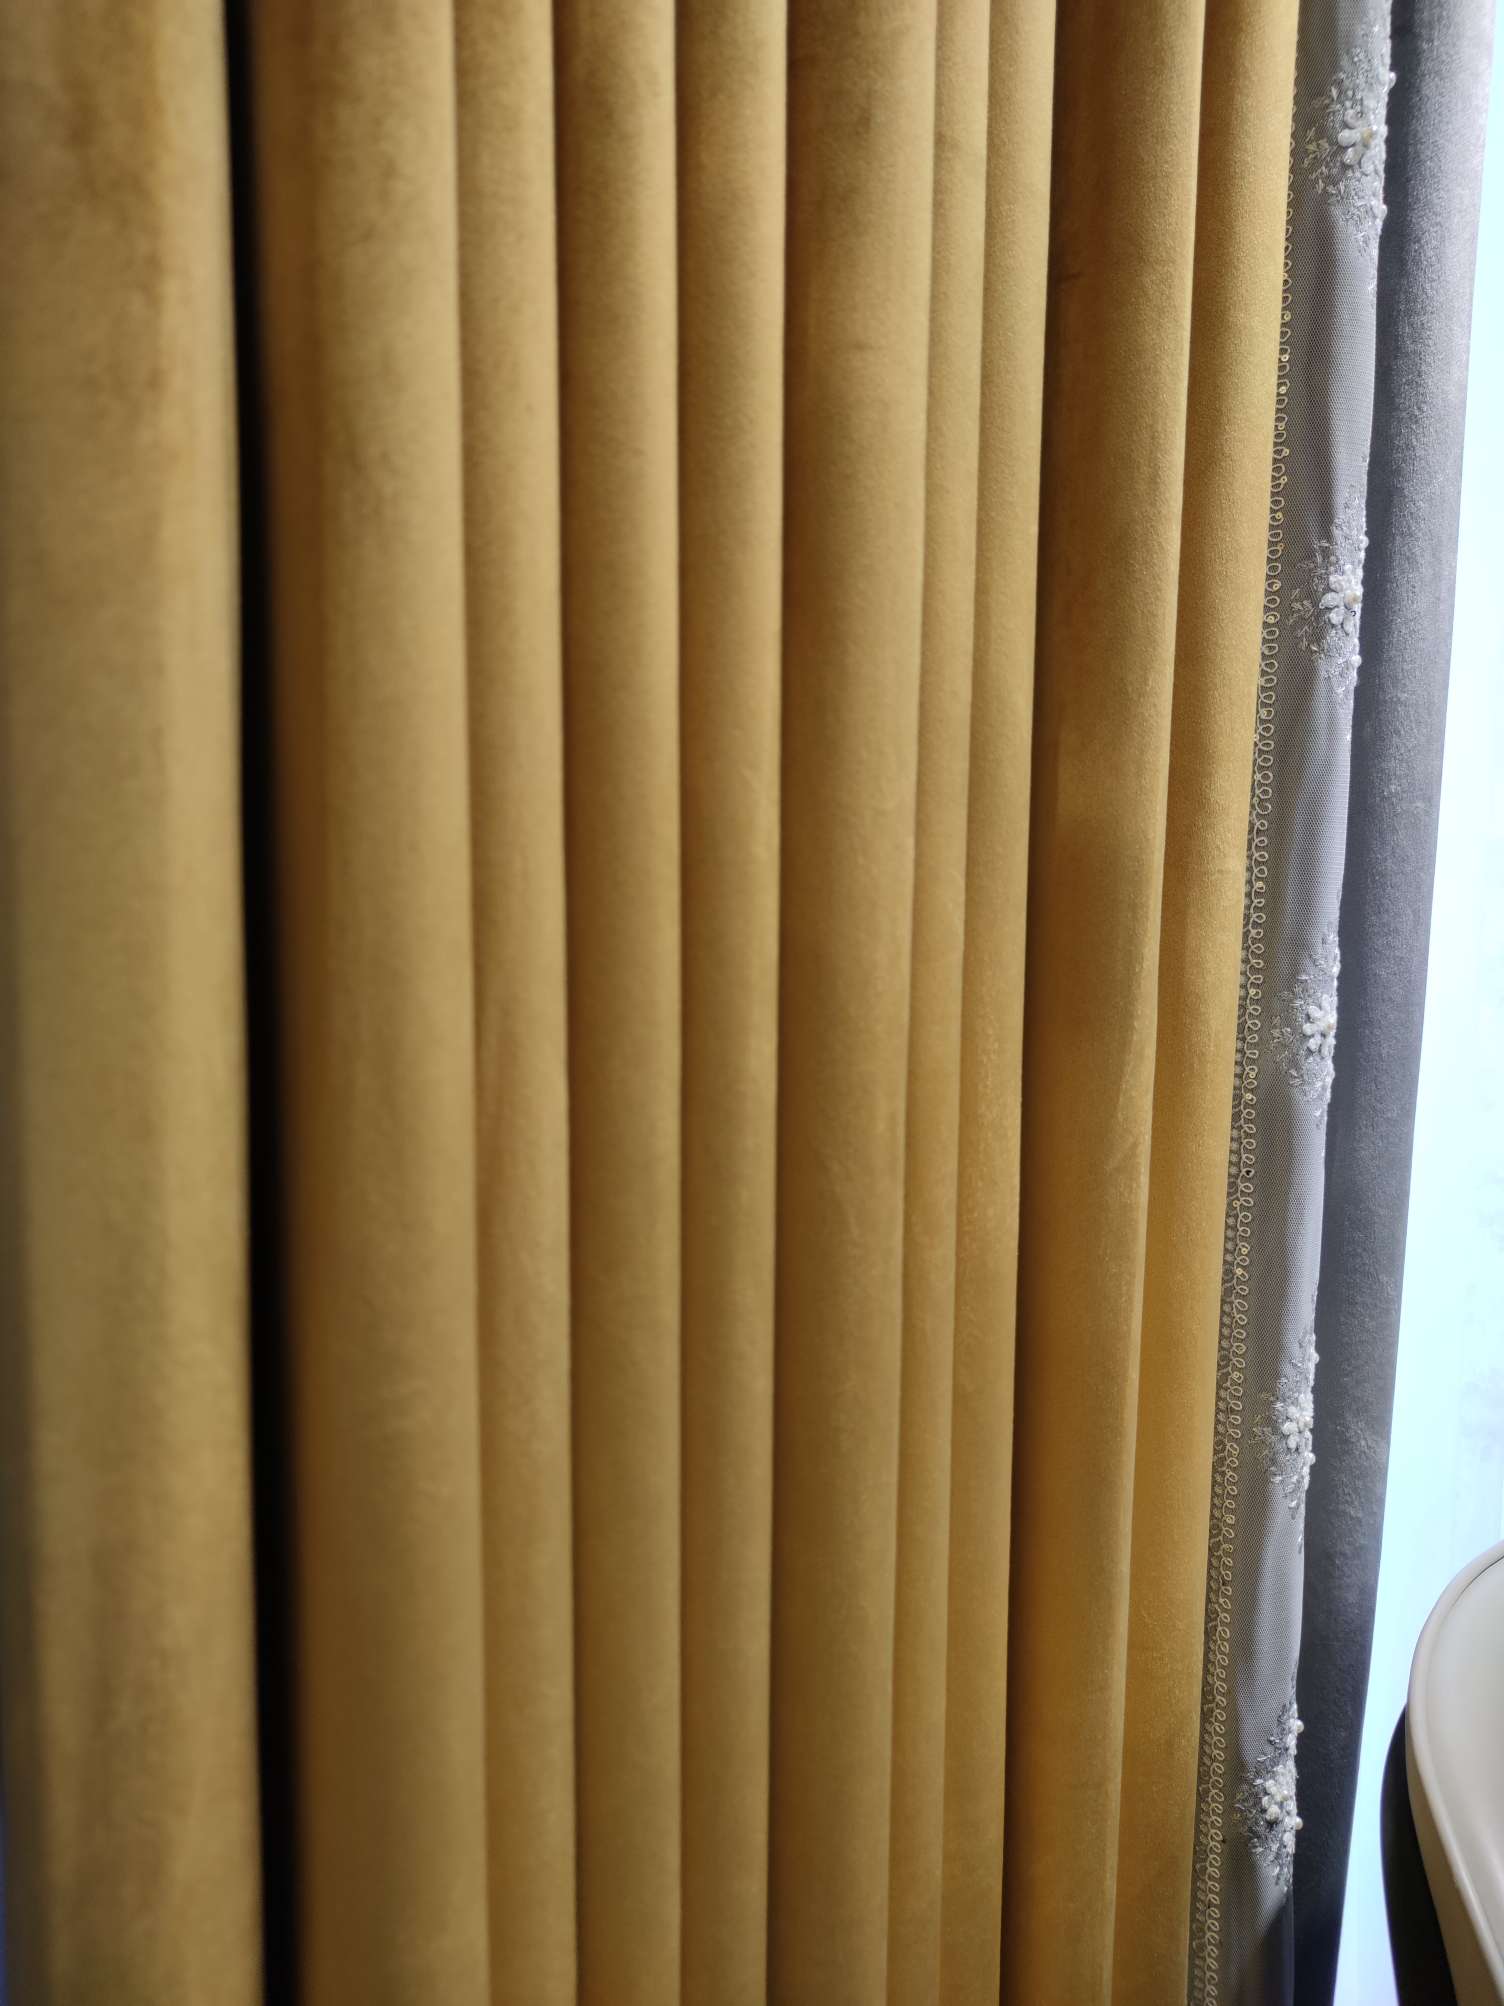 布朗斯现代简约轻奢北欧风客厅成品高档大气遮光明亮黄灰色拼接价格为270元/米产品图